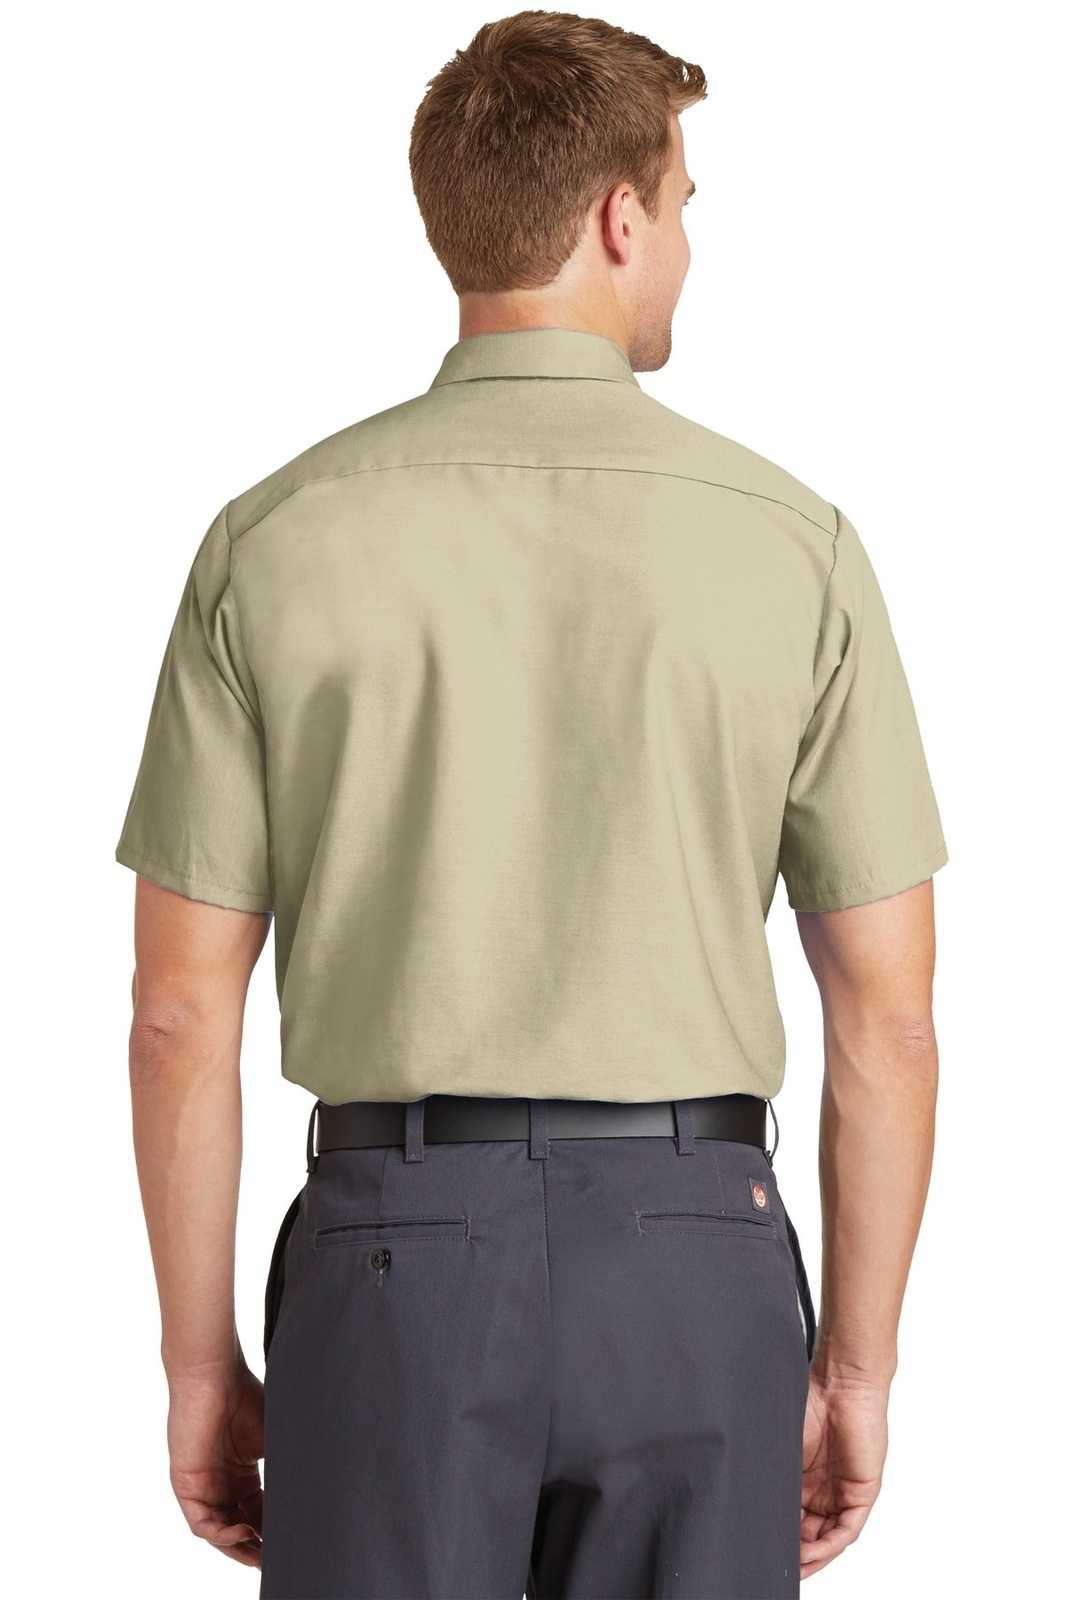 Red Kap SP24 Short Sleeve Industrial Work Shirt - Light Tan - HIT a Double - 2